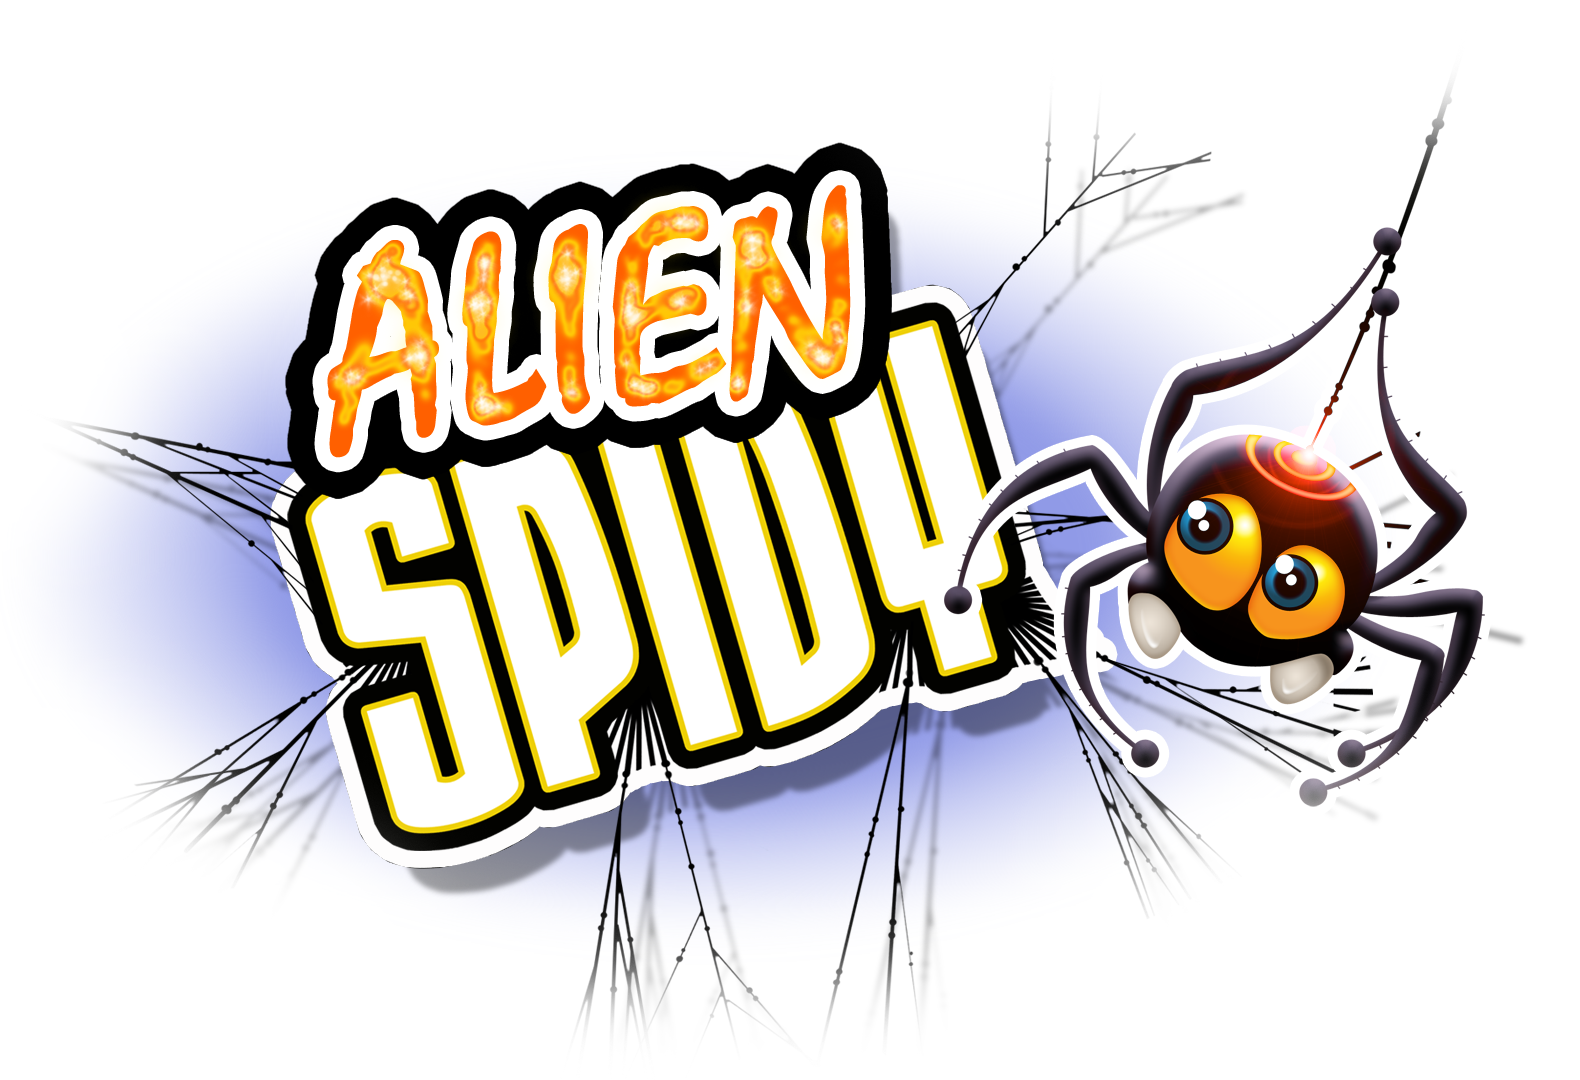 Alien Spidy